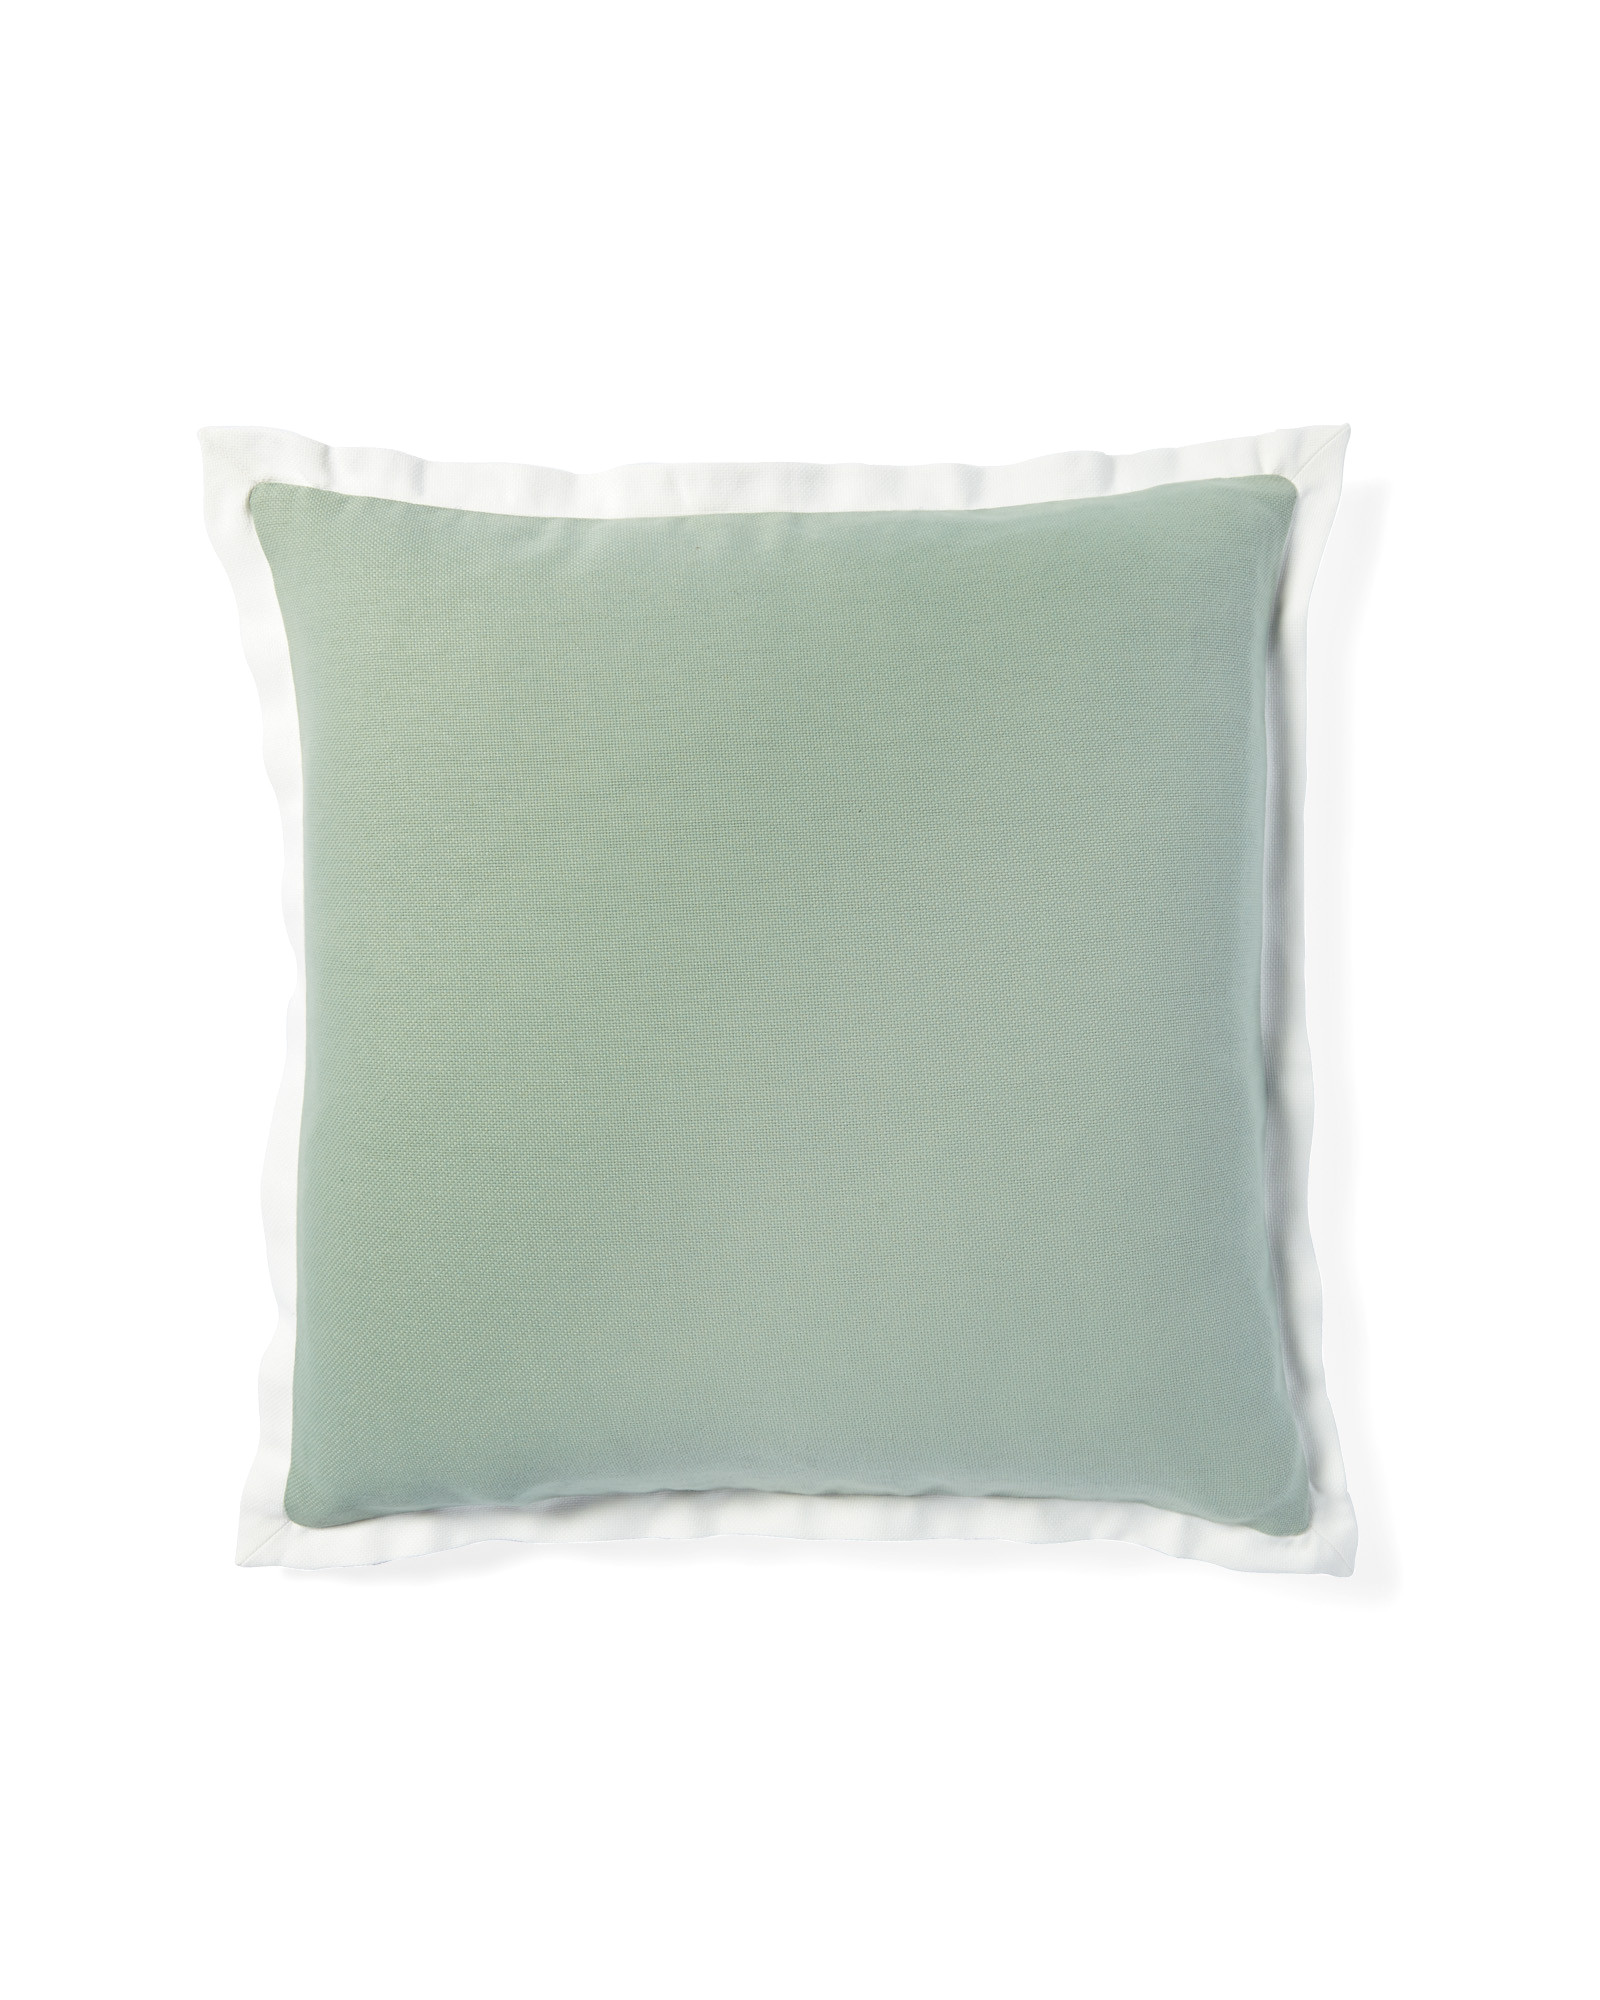 border frame outdoor pillow cover seaglass white